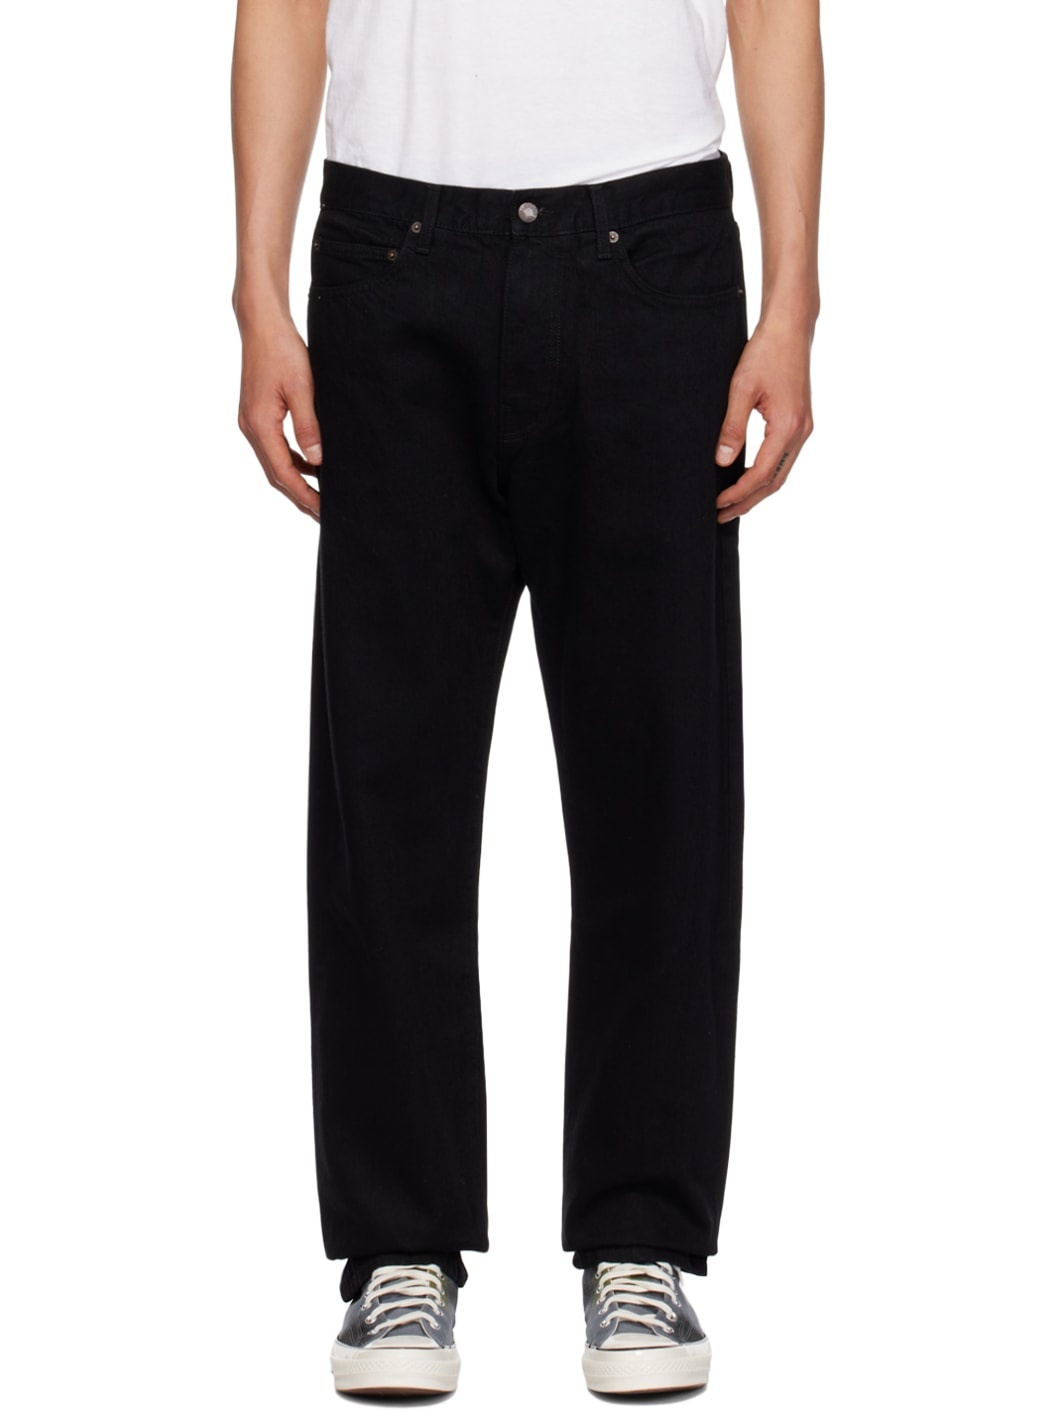 Black 5-Pocket Jeans - 1